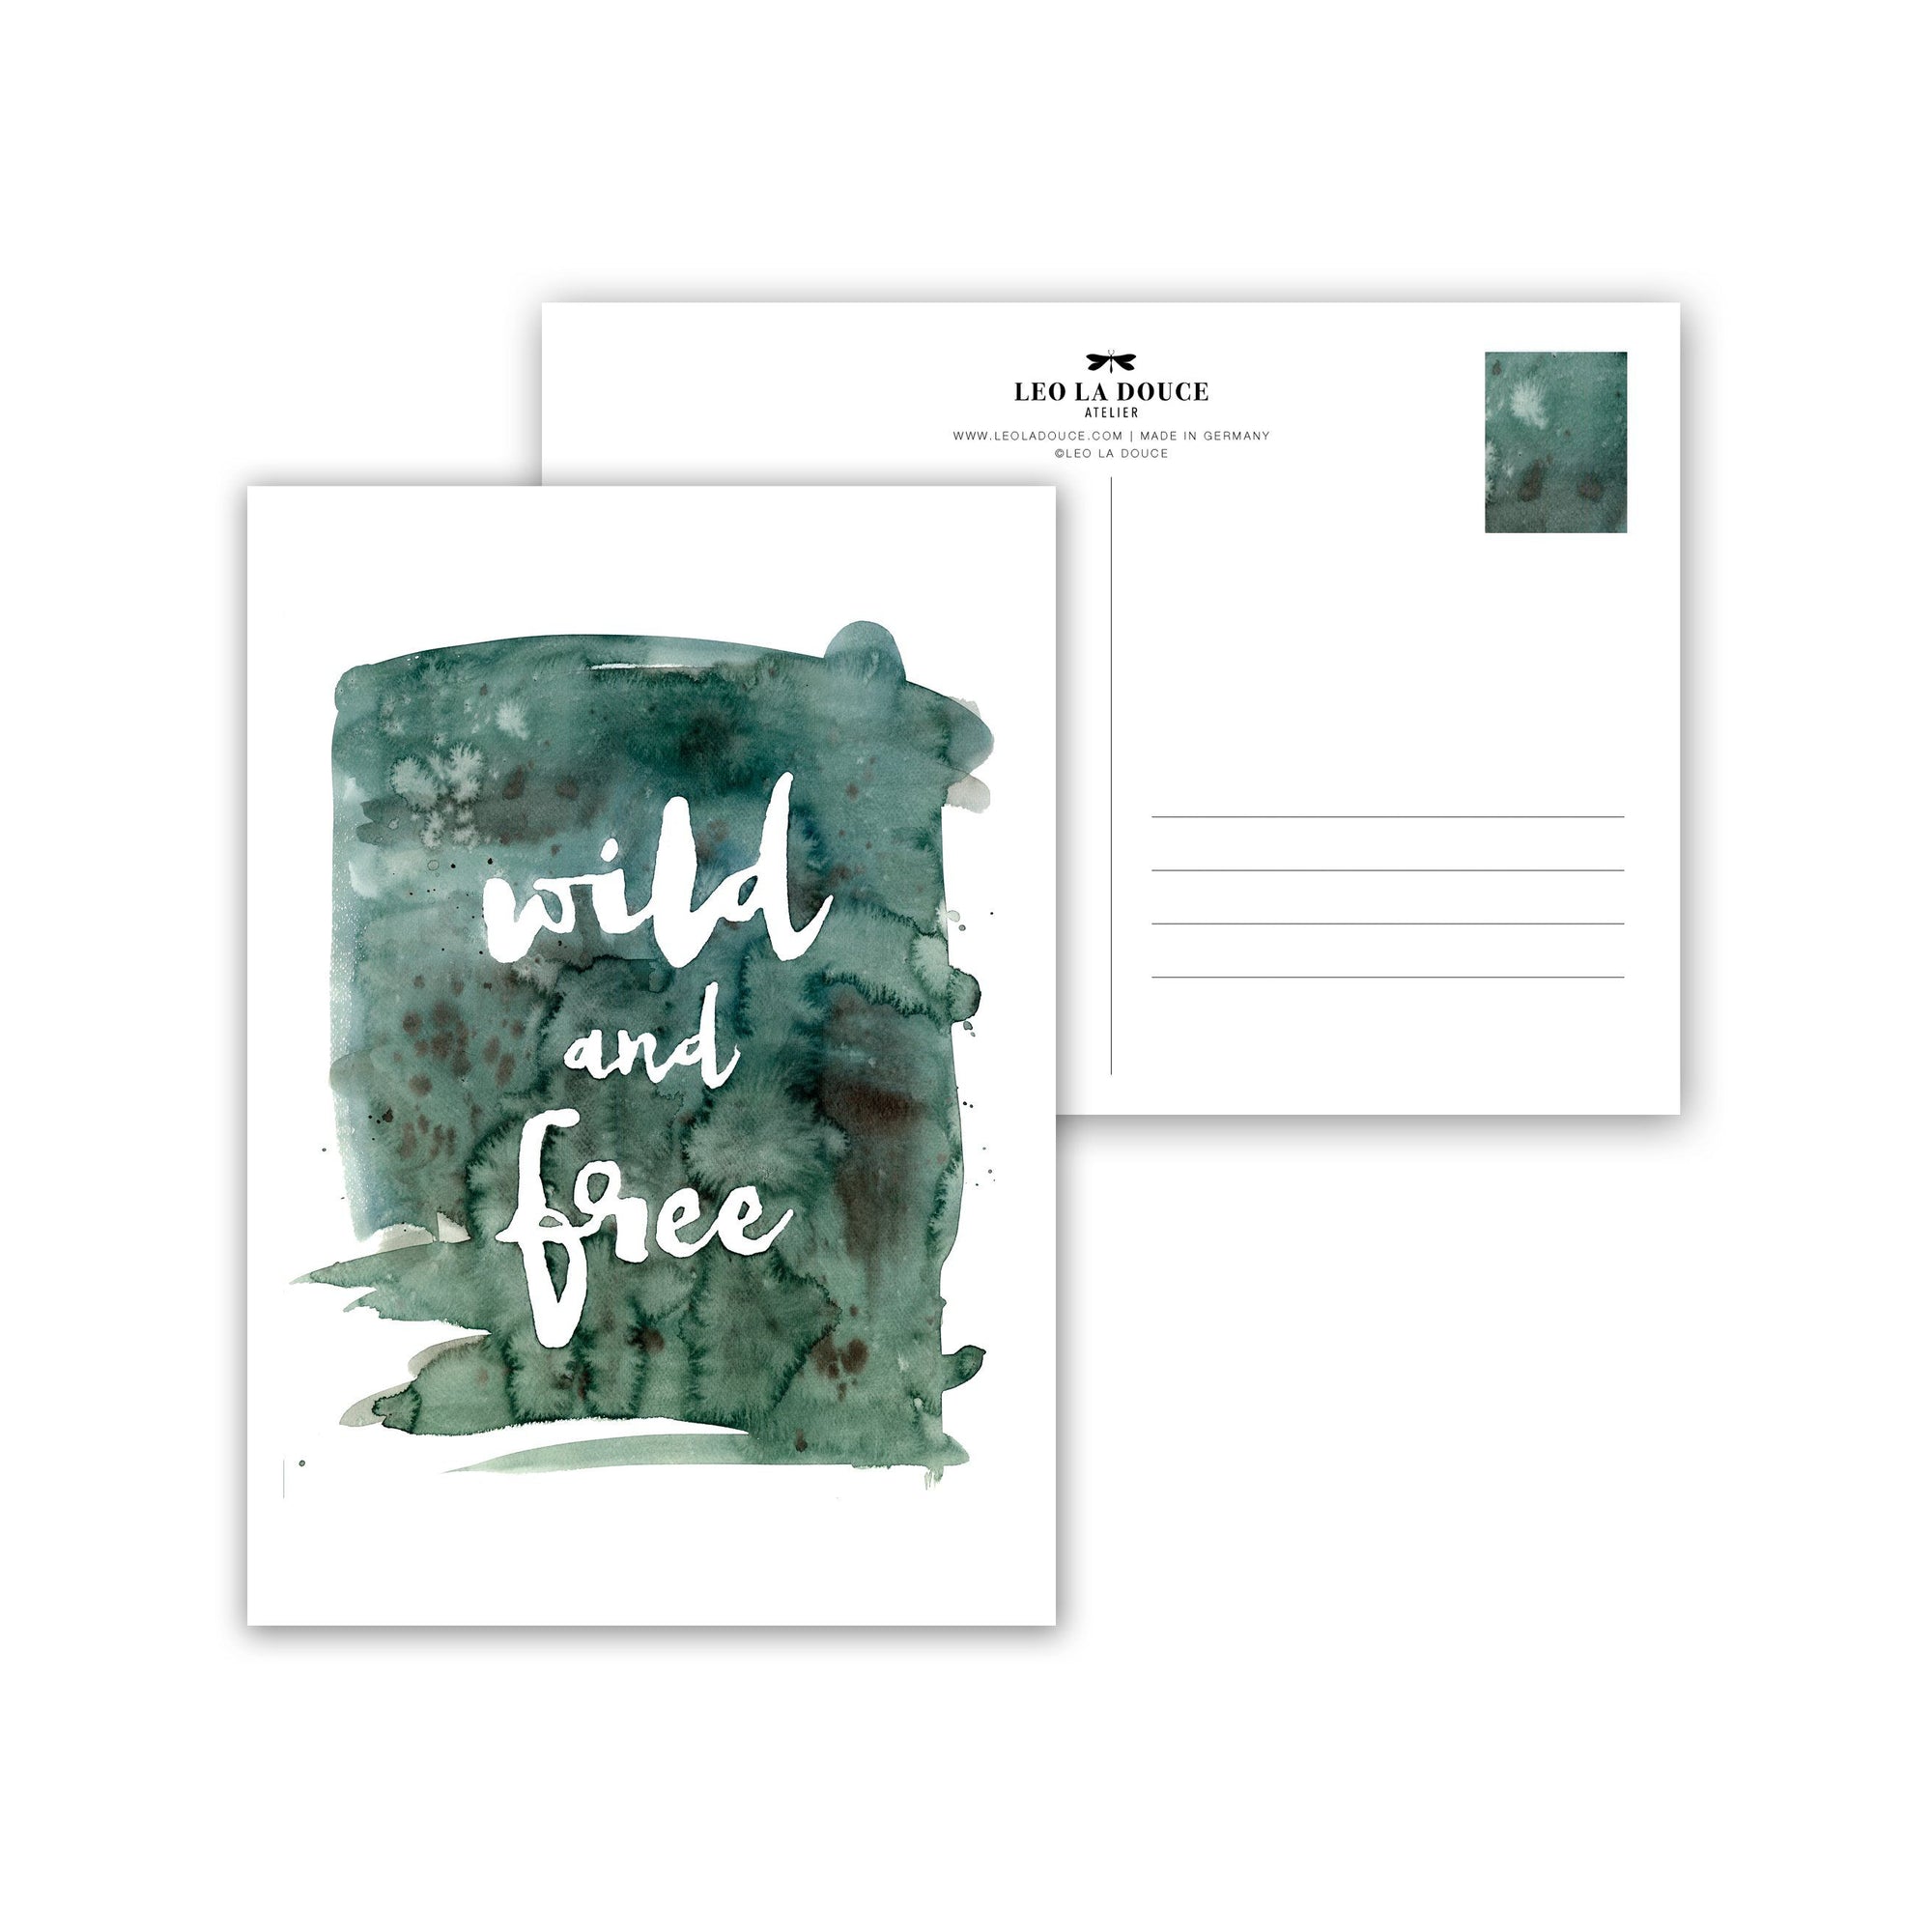 Postkarte - WILD & FREE Postkarte Leo la Douce 